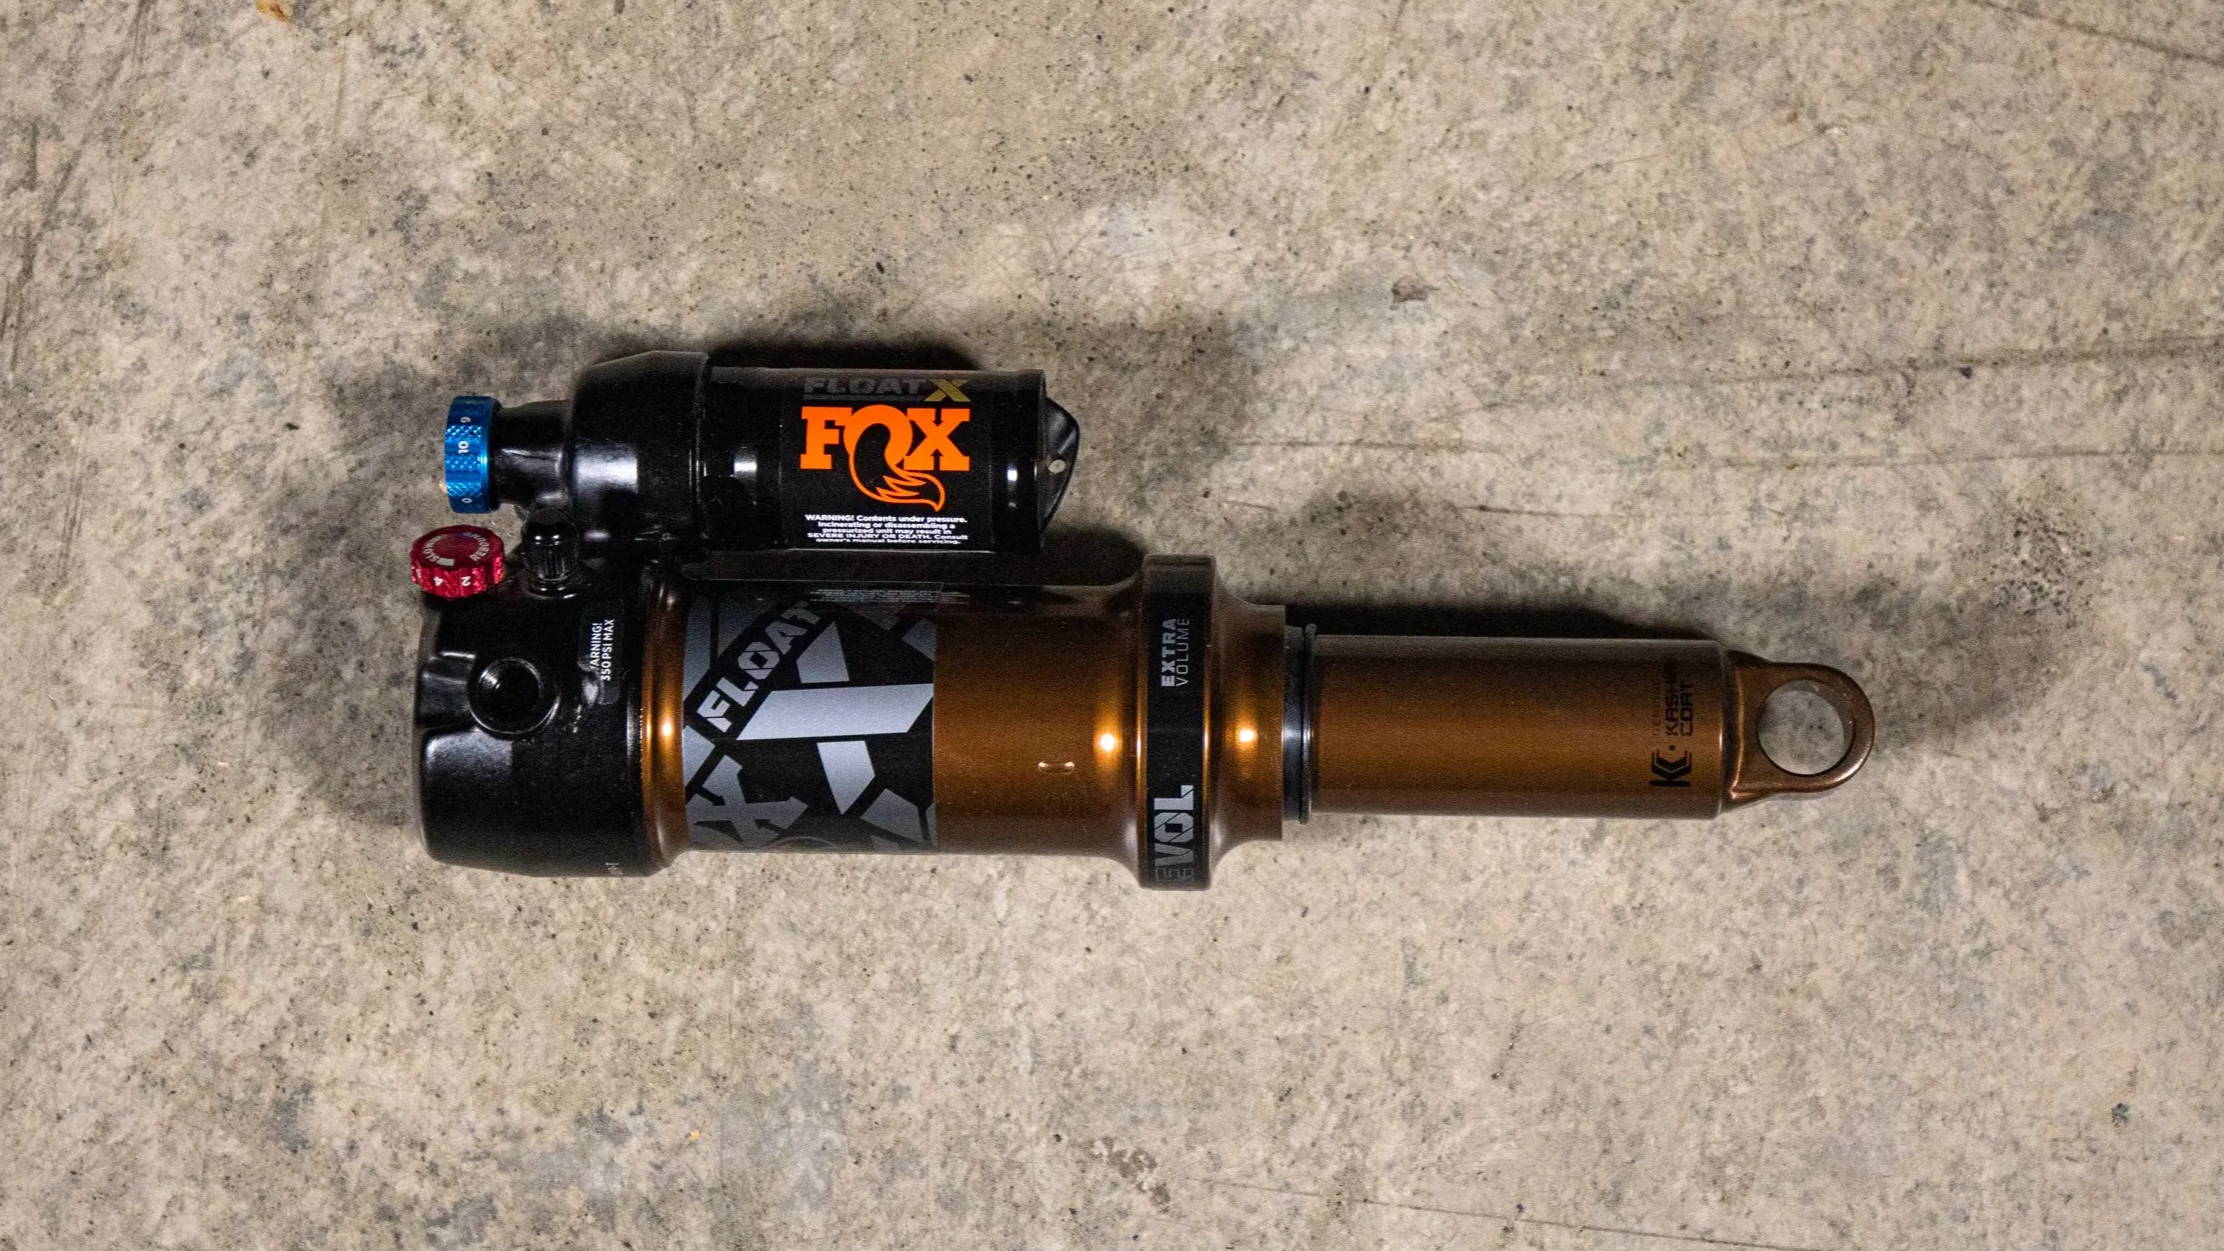 2022 Fox Float X Mountain bike trunnion rear shock on the floot